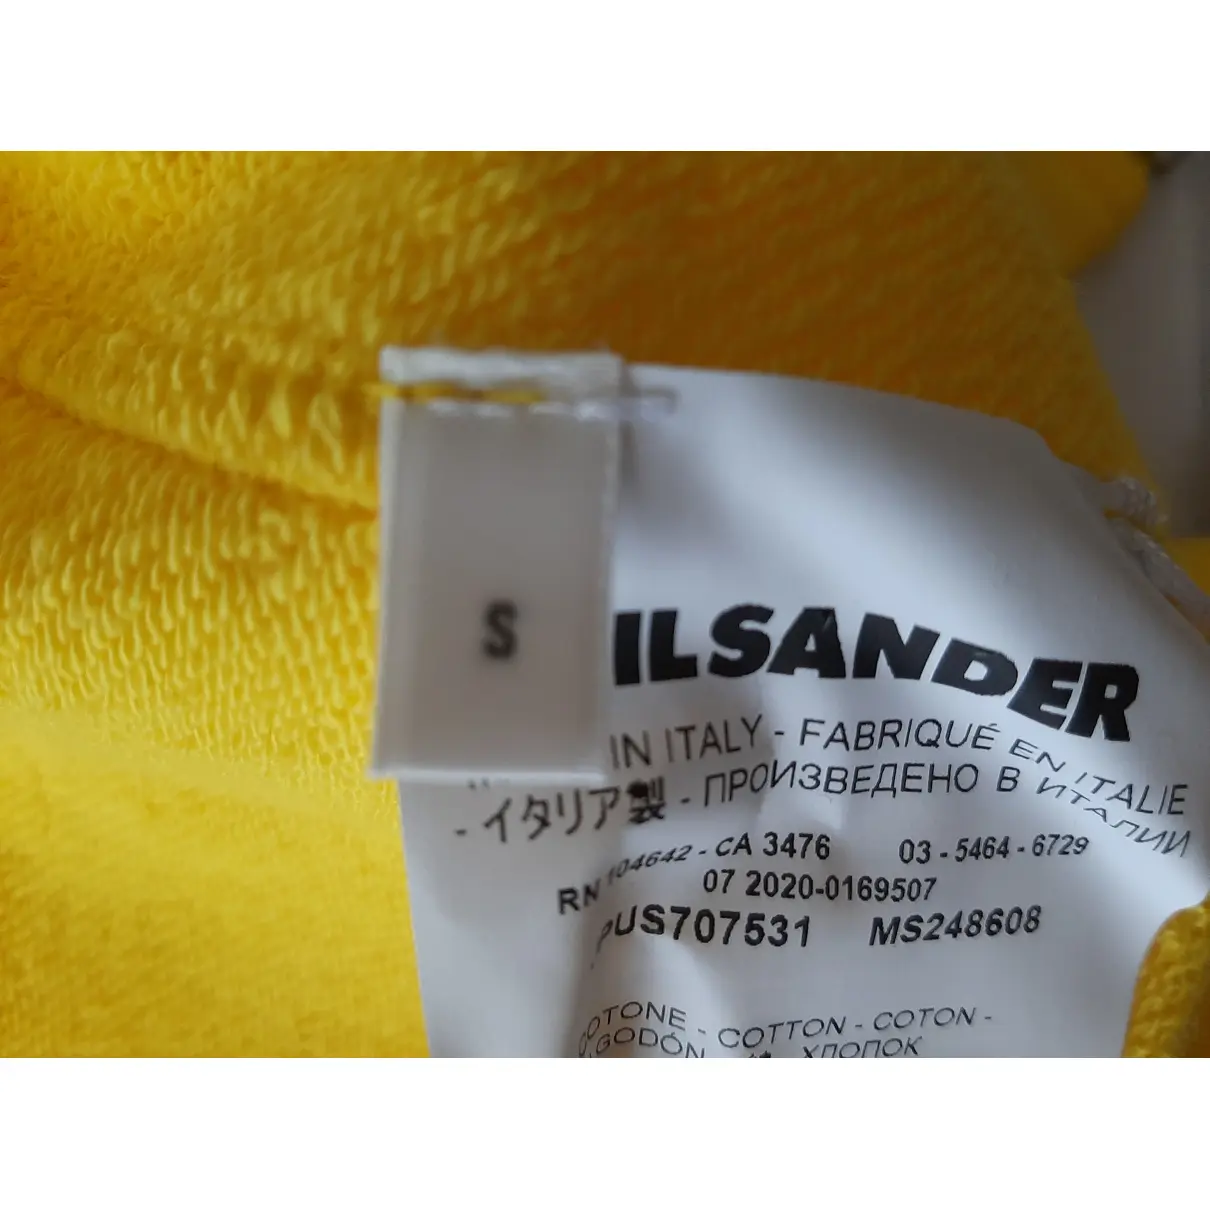 Luxury Jil Sander Knitwear & Sweatshirts Men